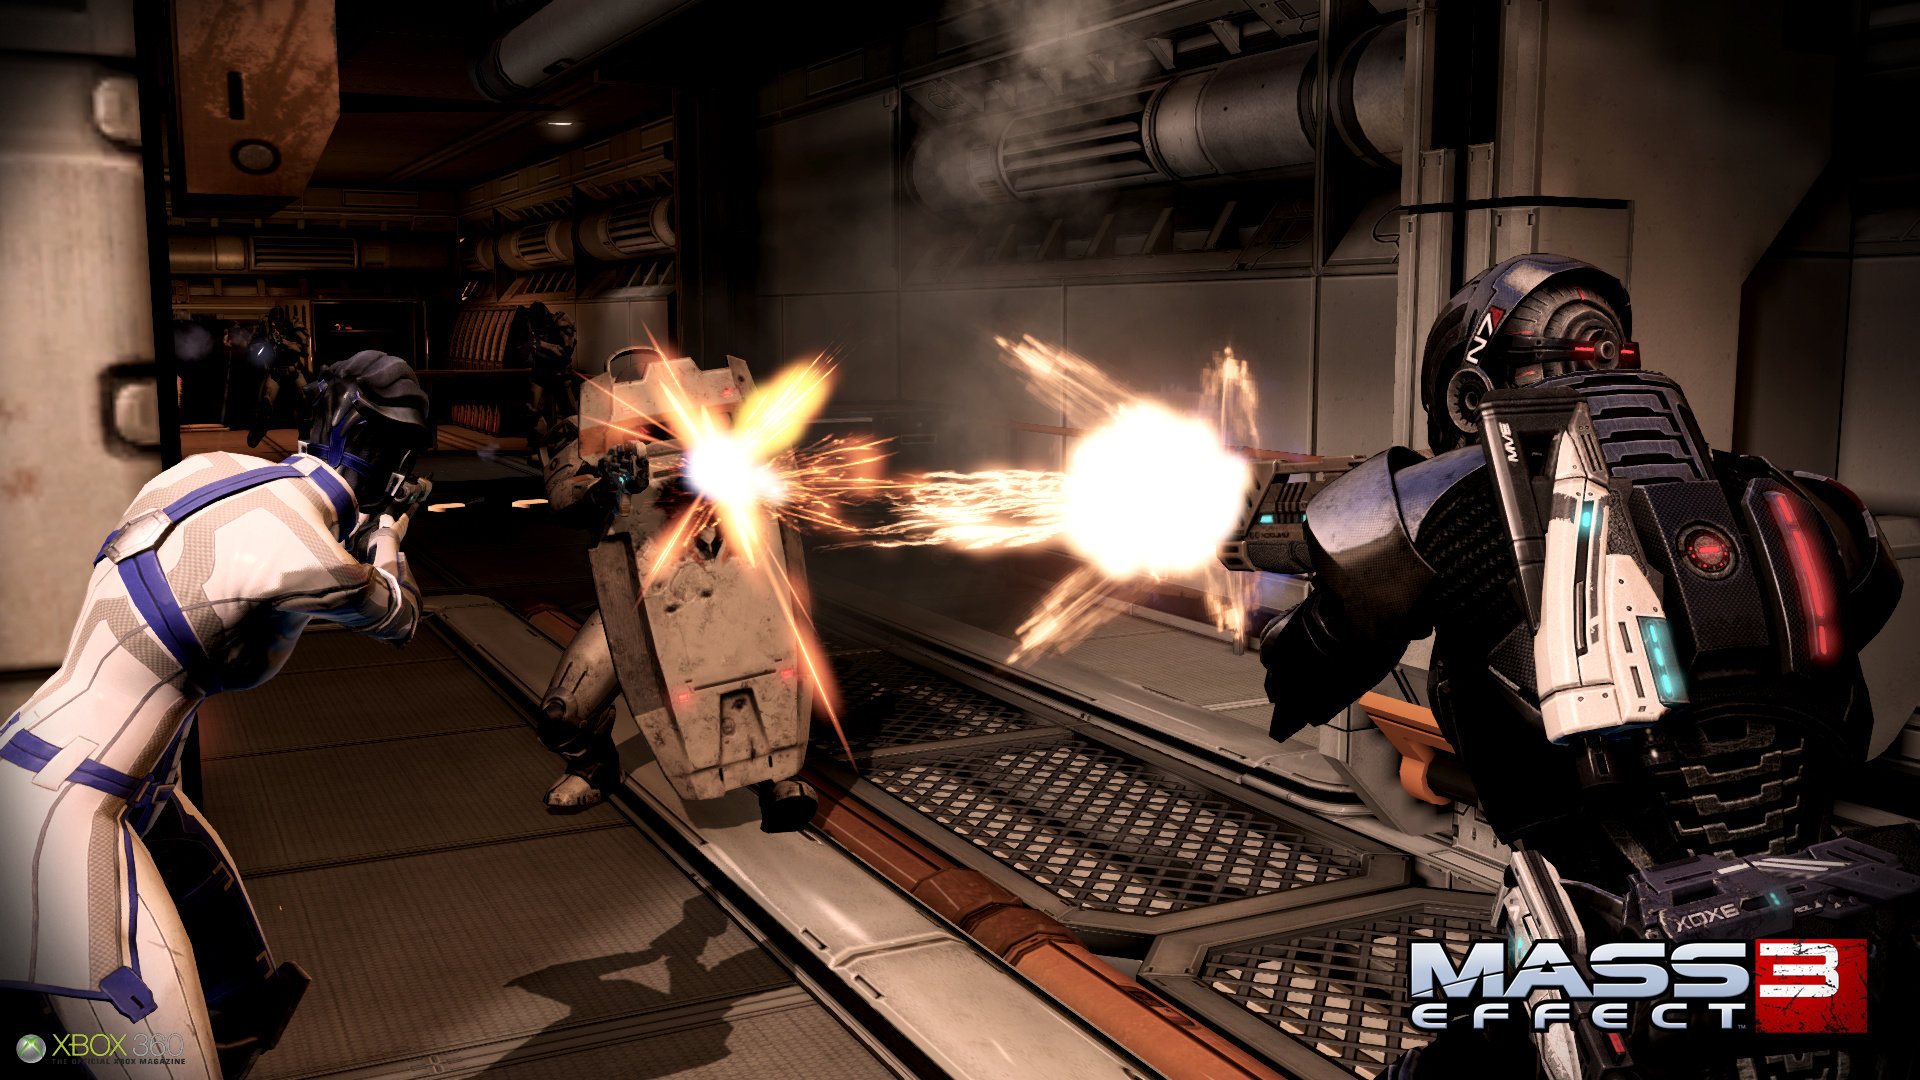 Immagine pubblicata in relazione al seguente contenuto: Mass Effect 3  in arrivo e BioWare parla di Mass Effect 4 | Nome immagine: news16590_4.jpg